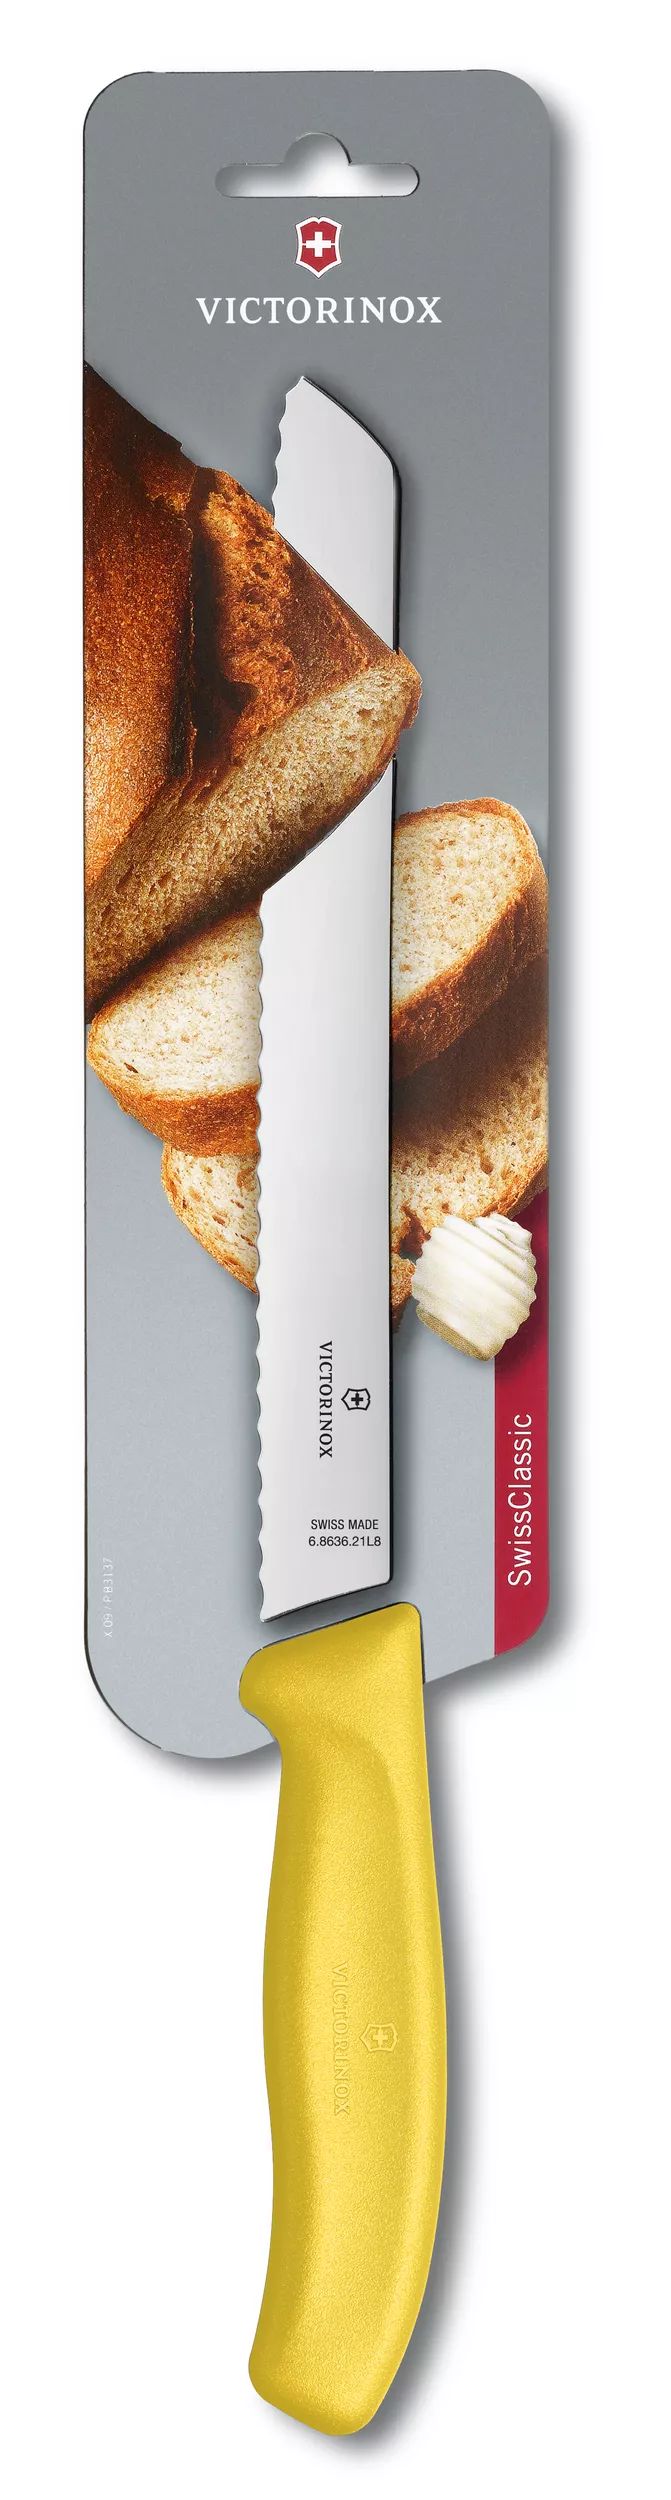 Swiss Classic Bread Knife - 6.8636.21L8B